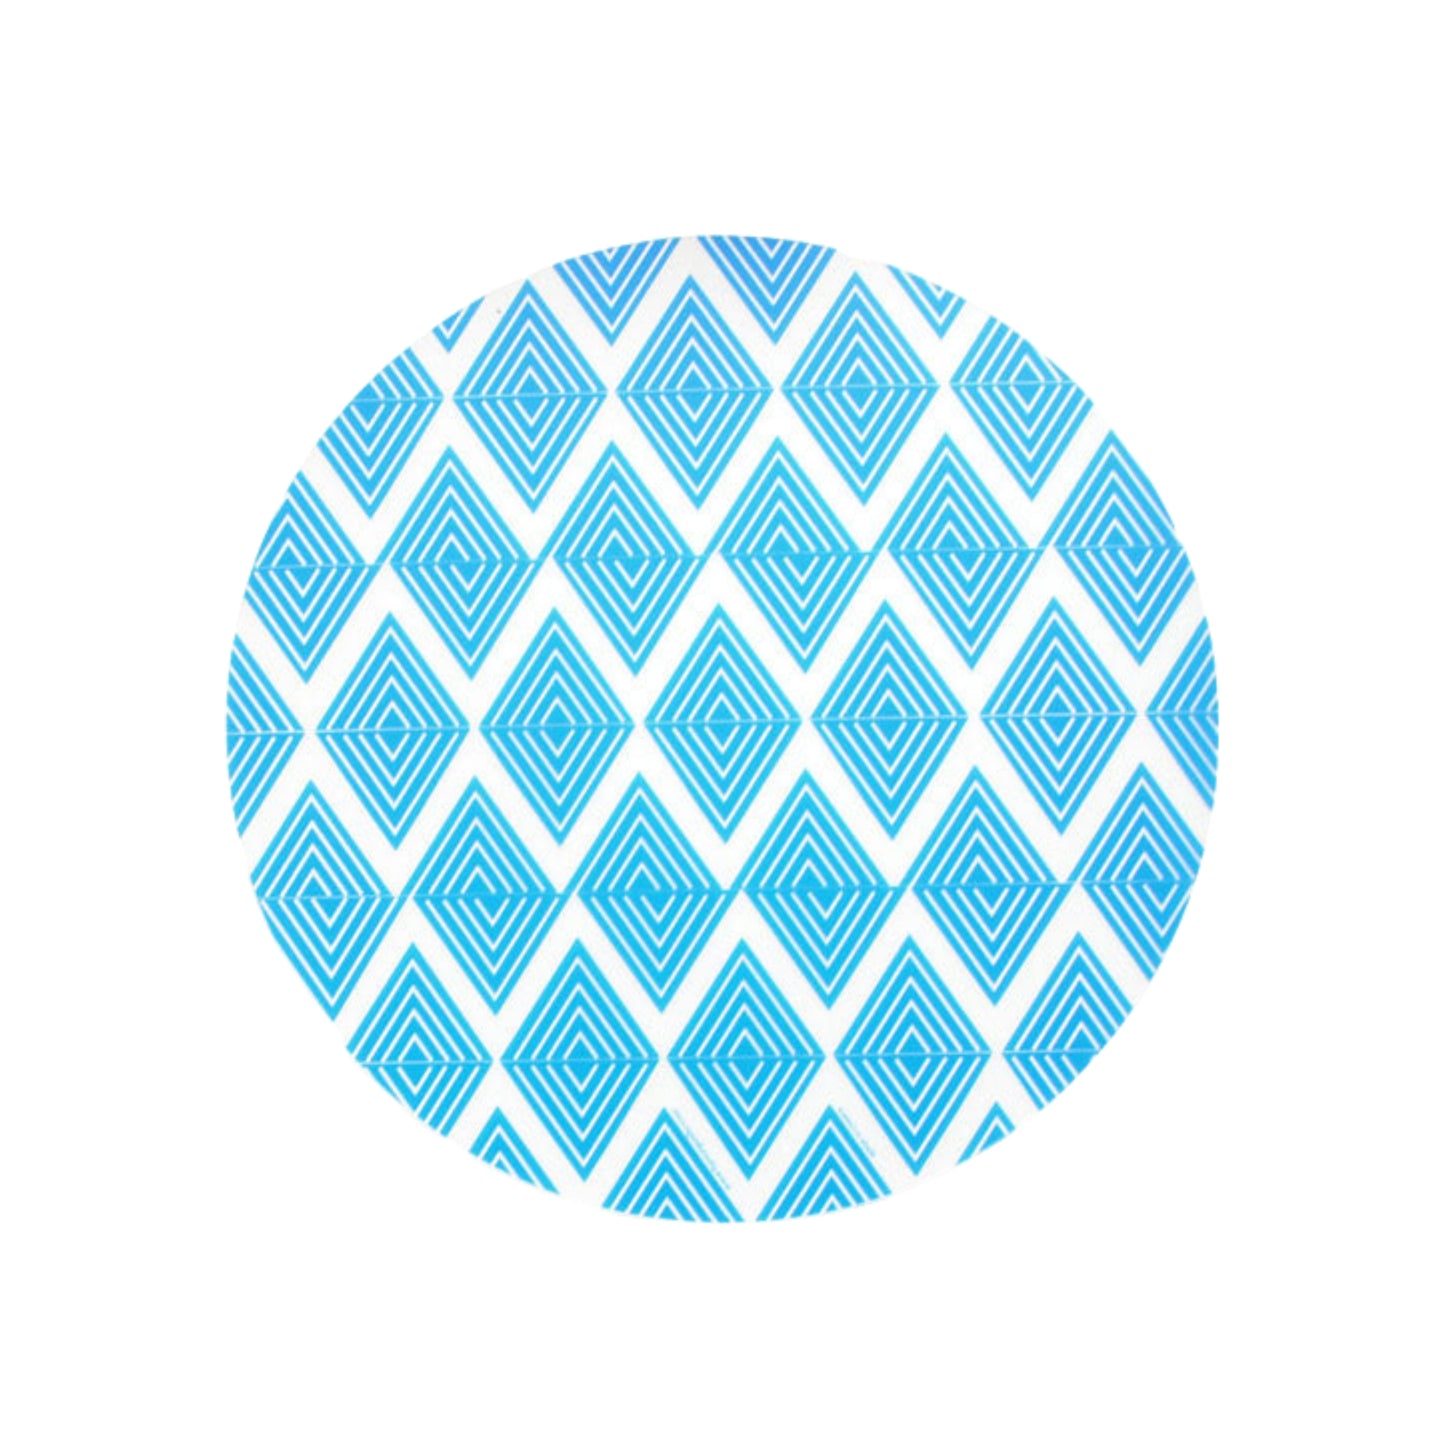 Tischset Blue Labyrinth Design - Durchmesser 35cm